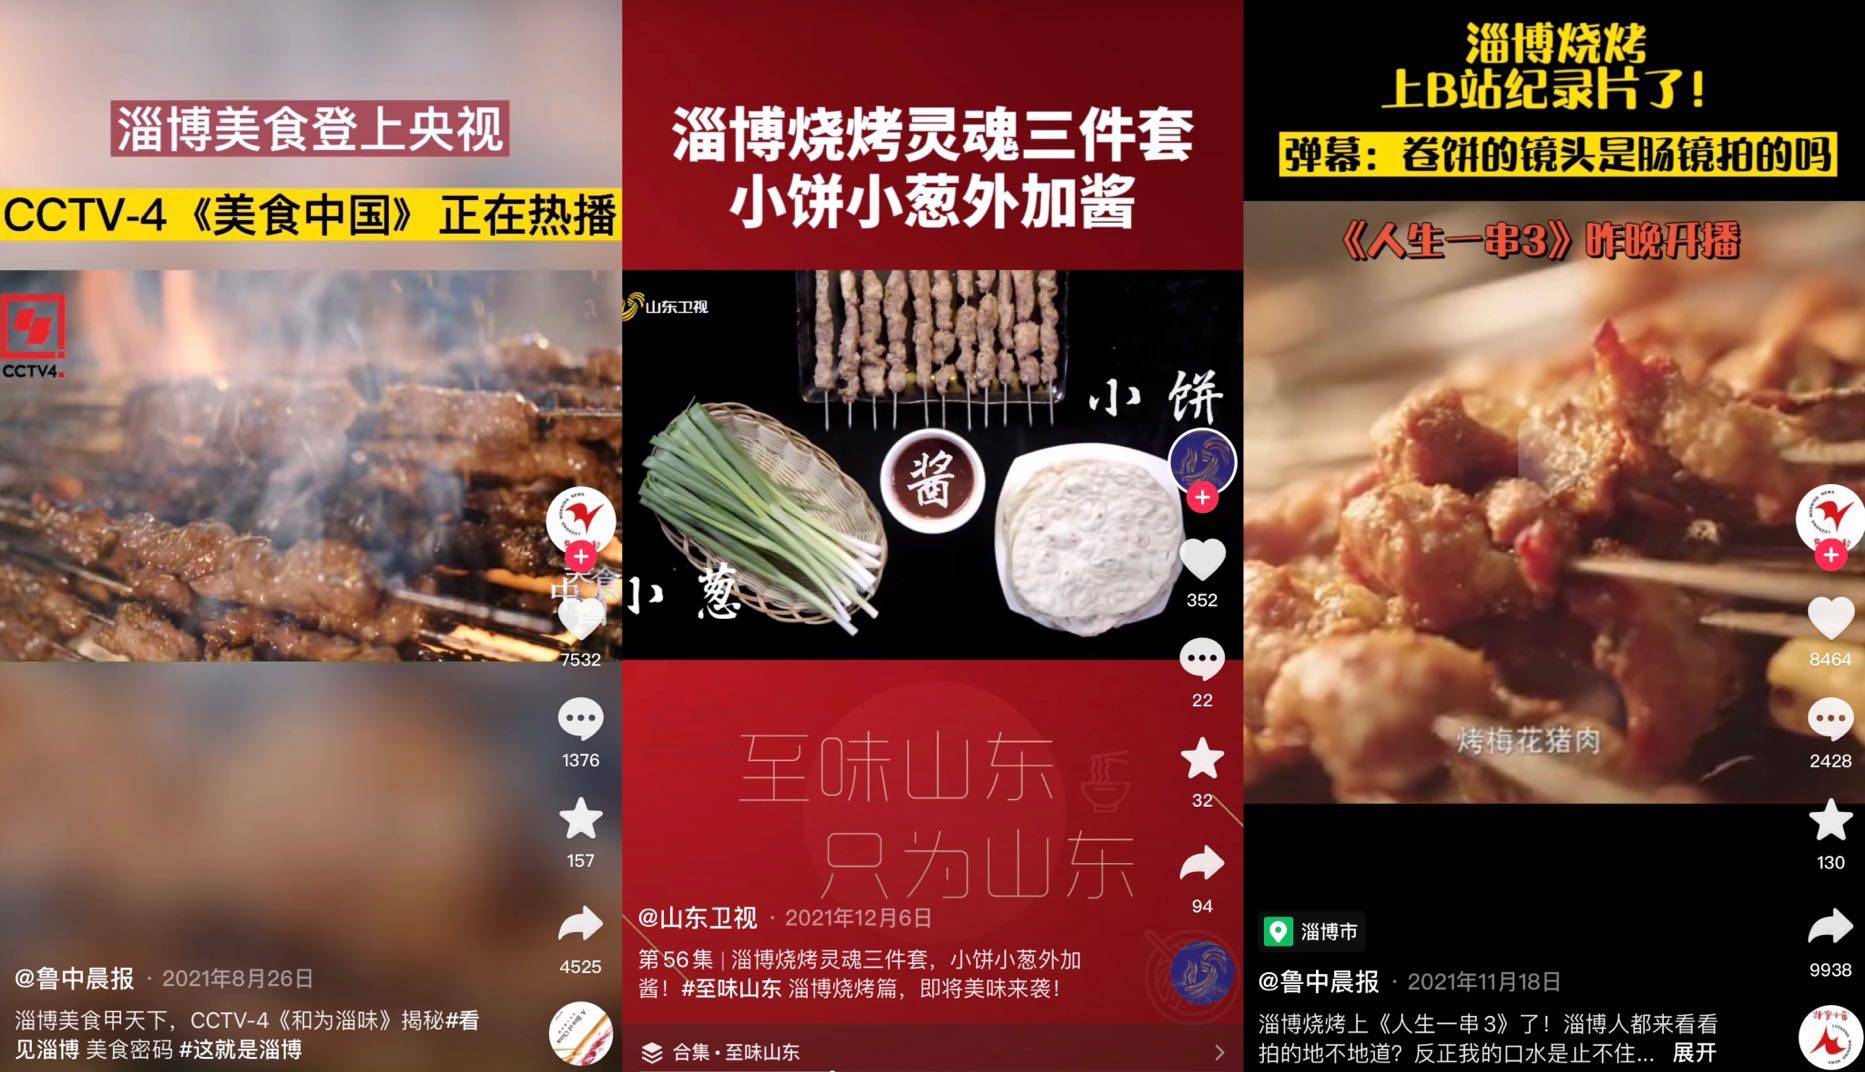 “淄博烧烤”火出圈，品牌该如何玩转热点流量？